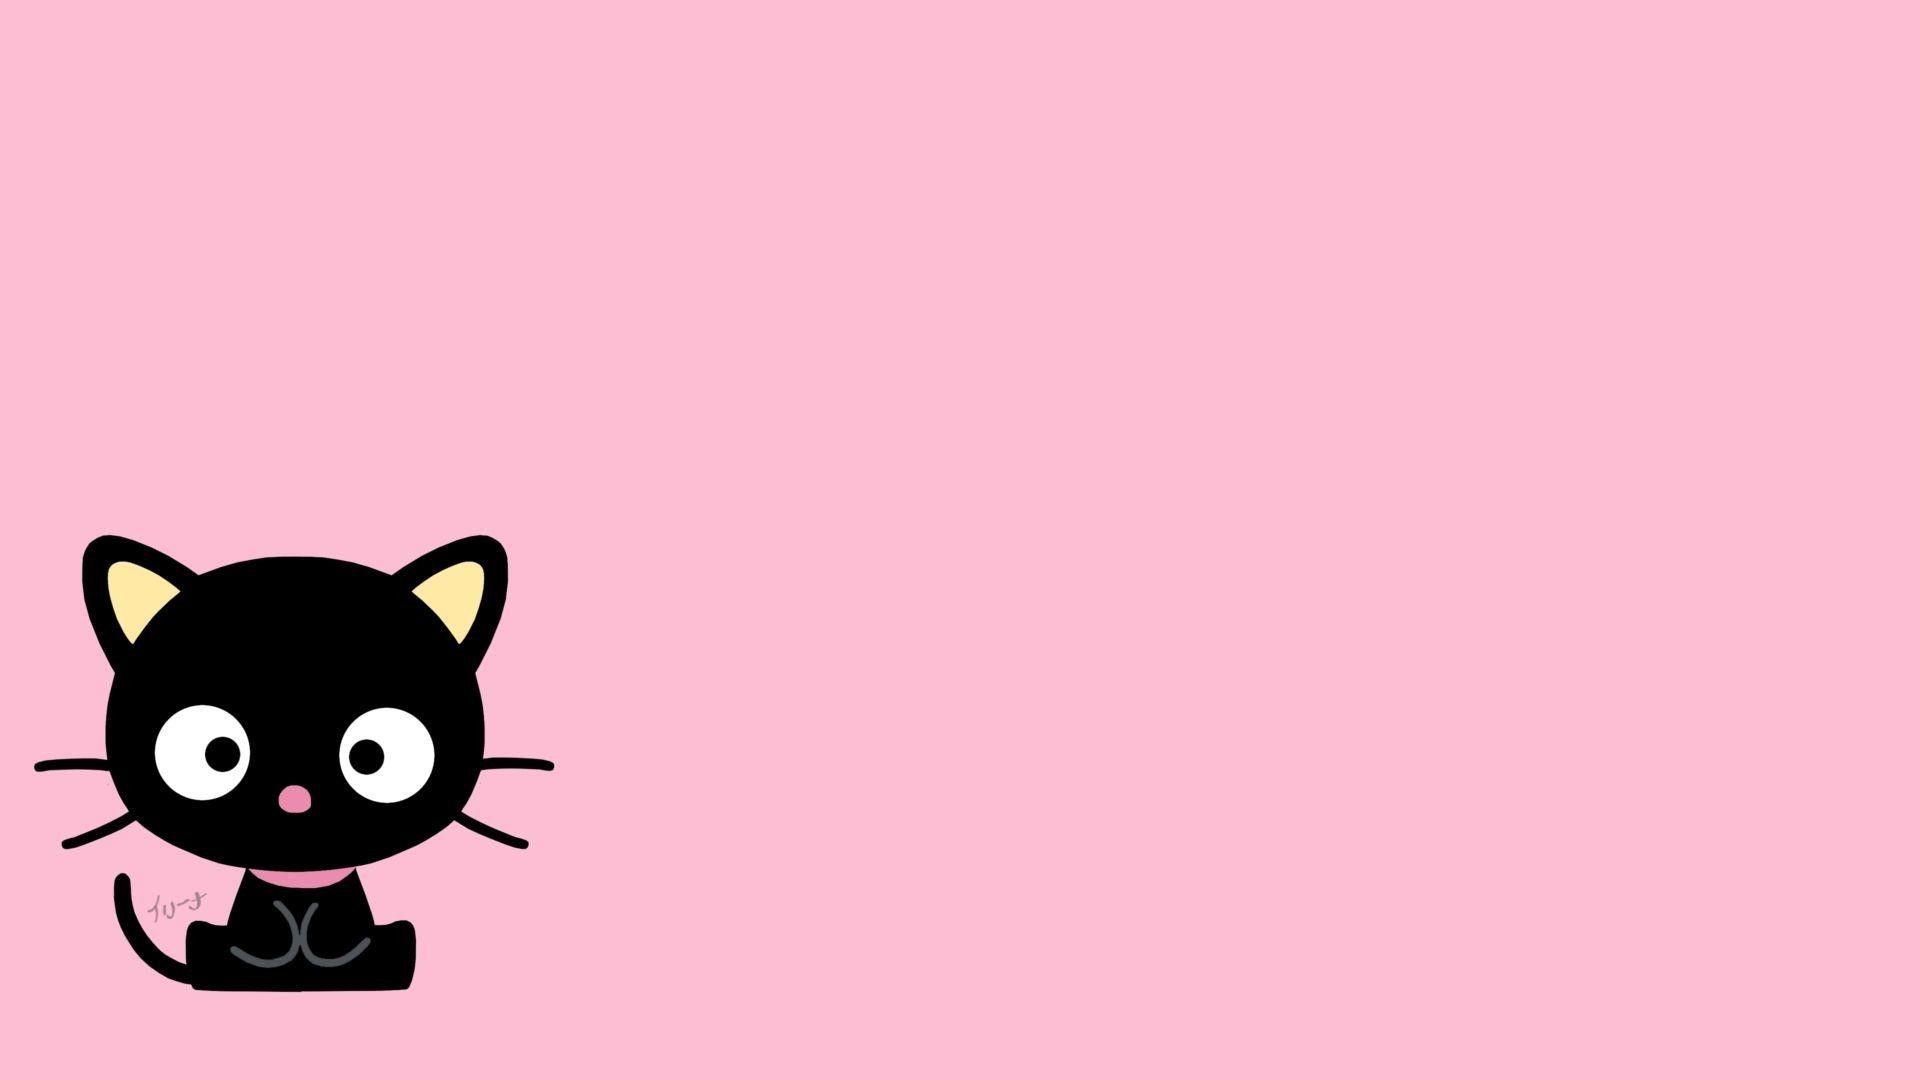 Black cat on a pink background - Keroppi